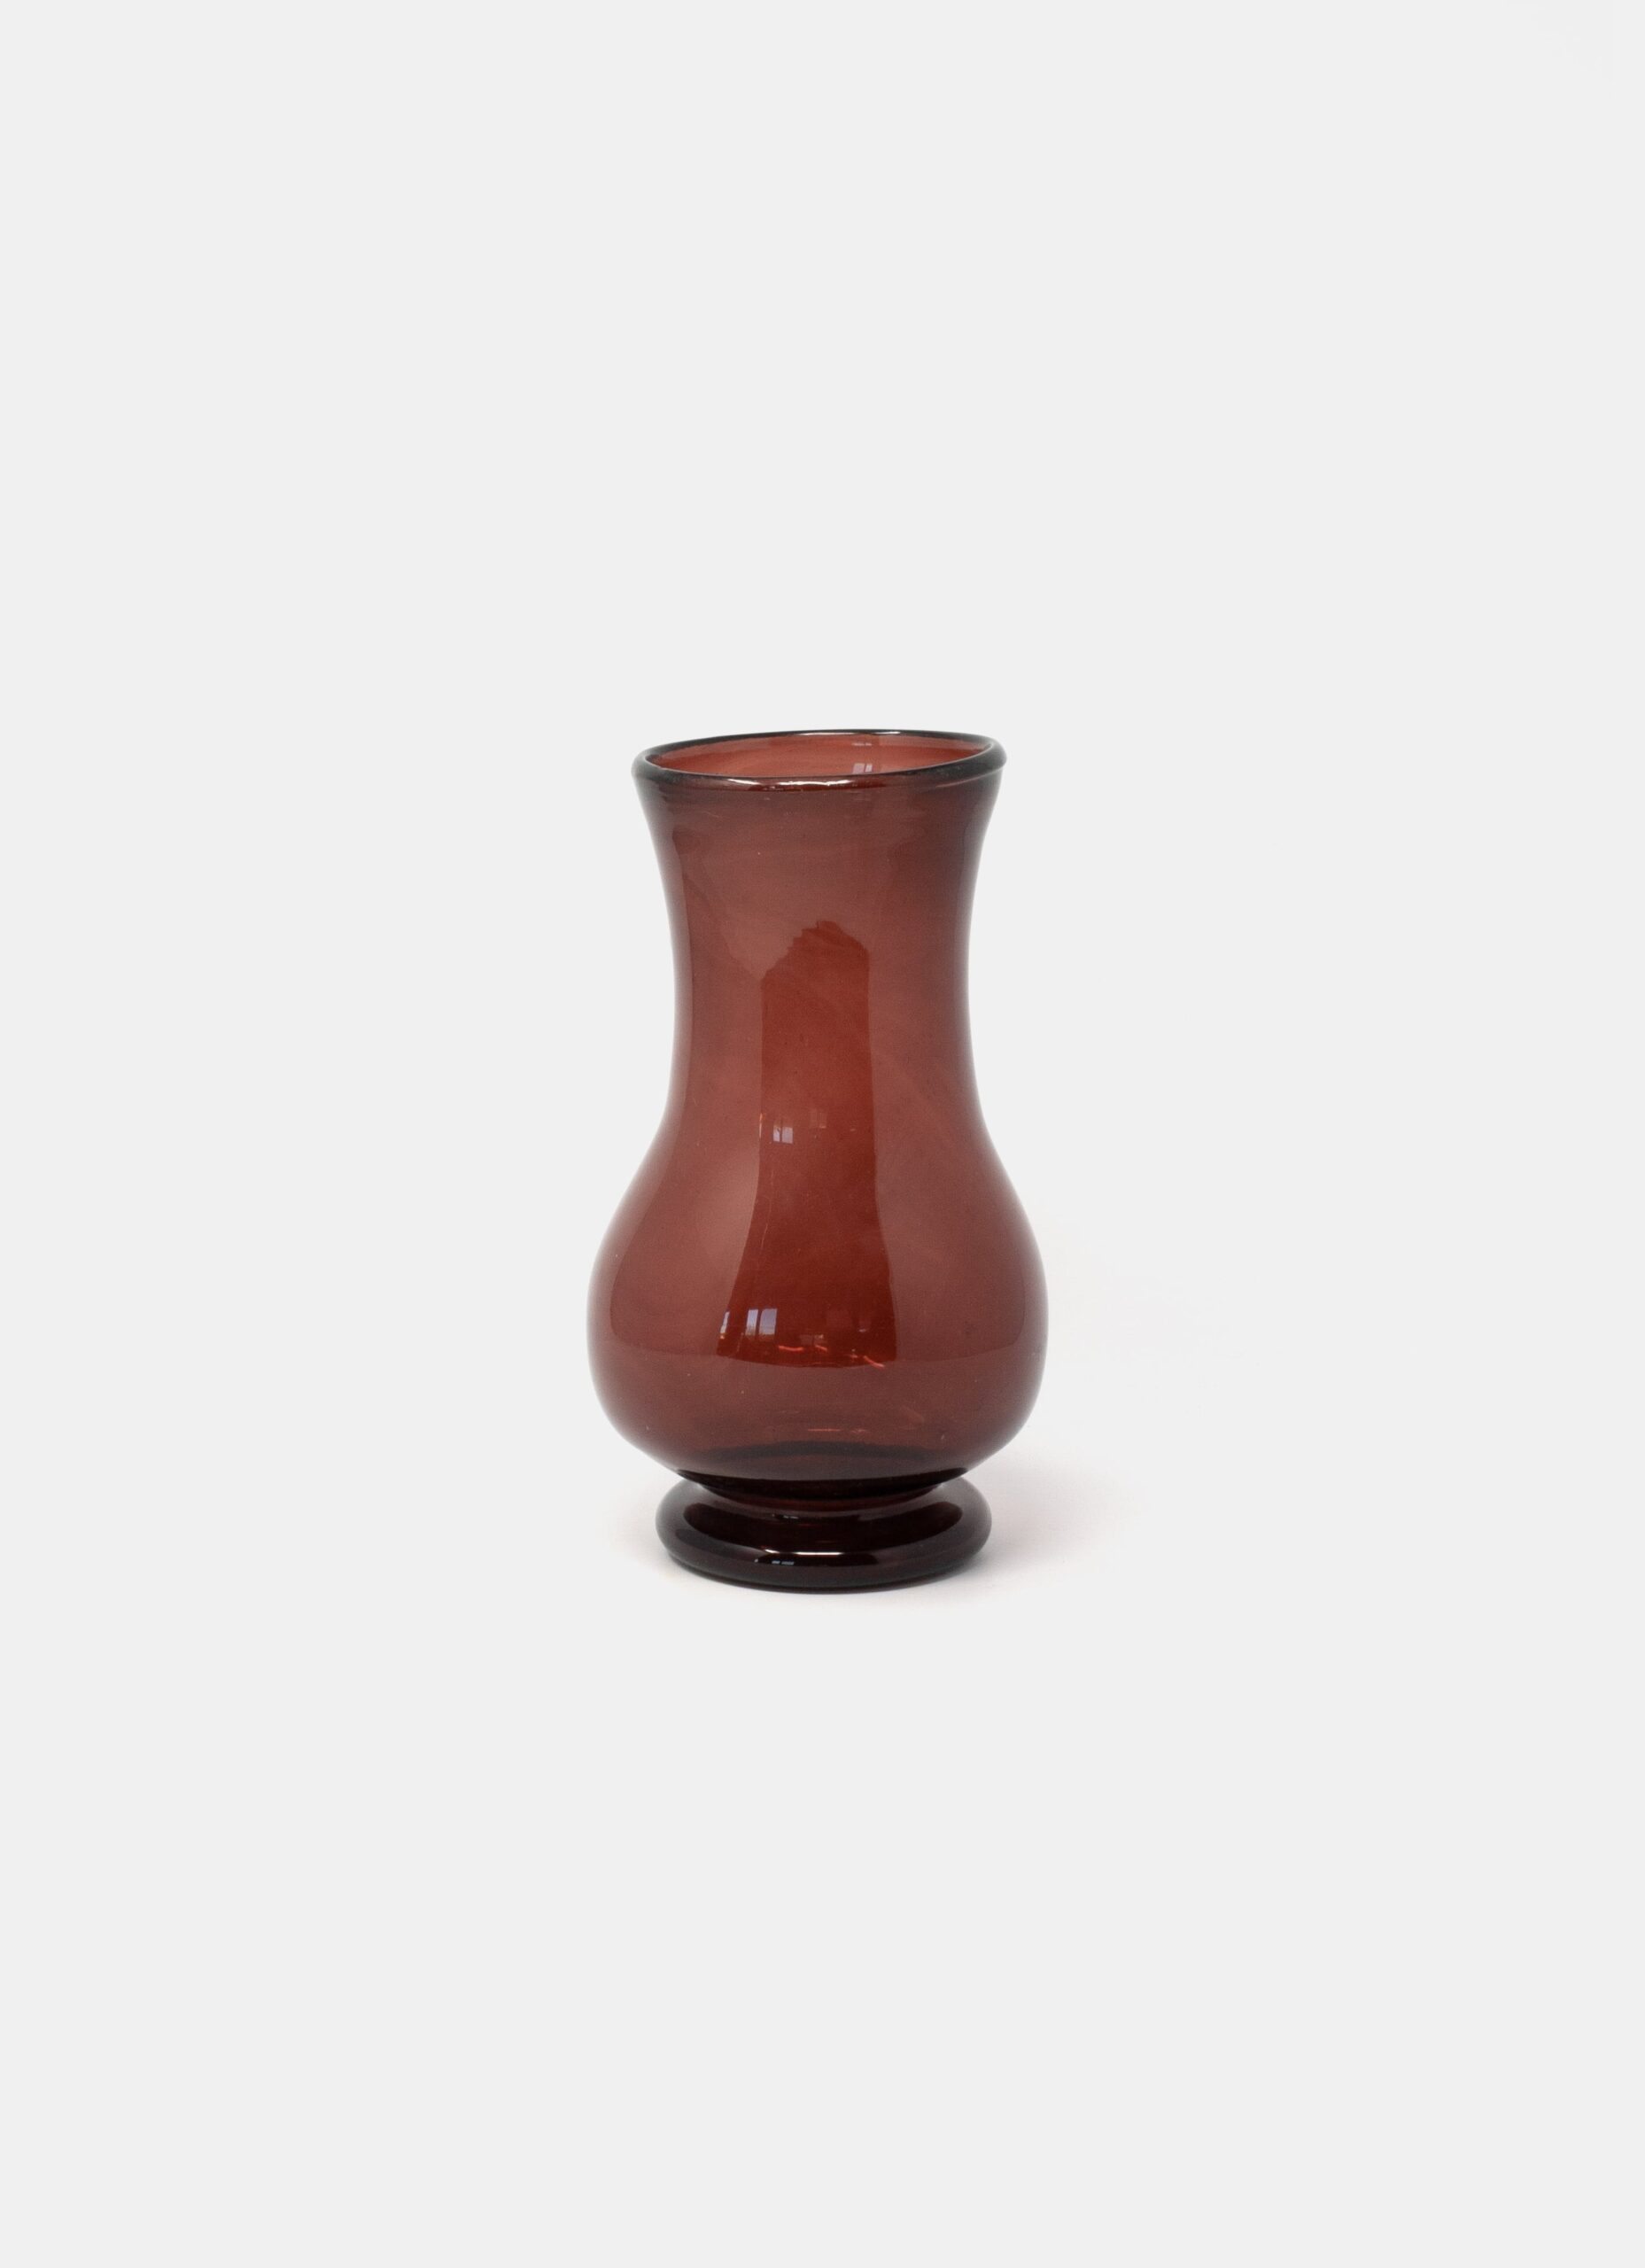 La Soufflerie - Handblown Glass Vase - Framboise - Pichet